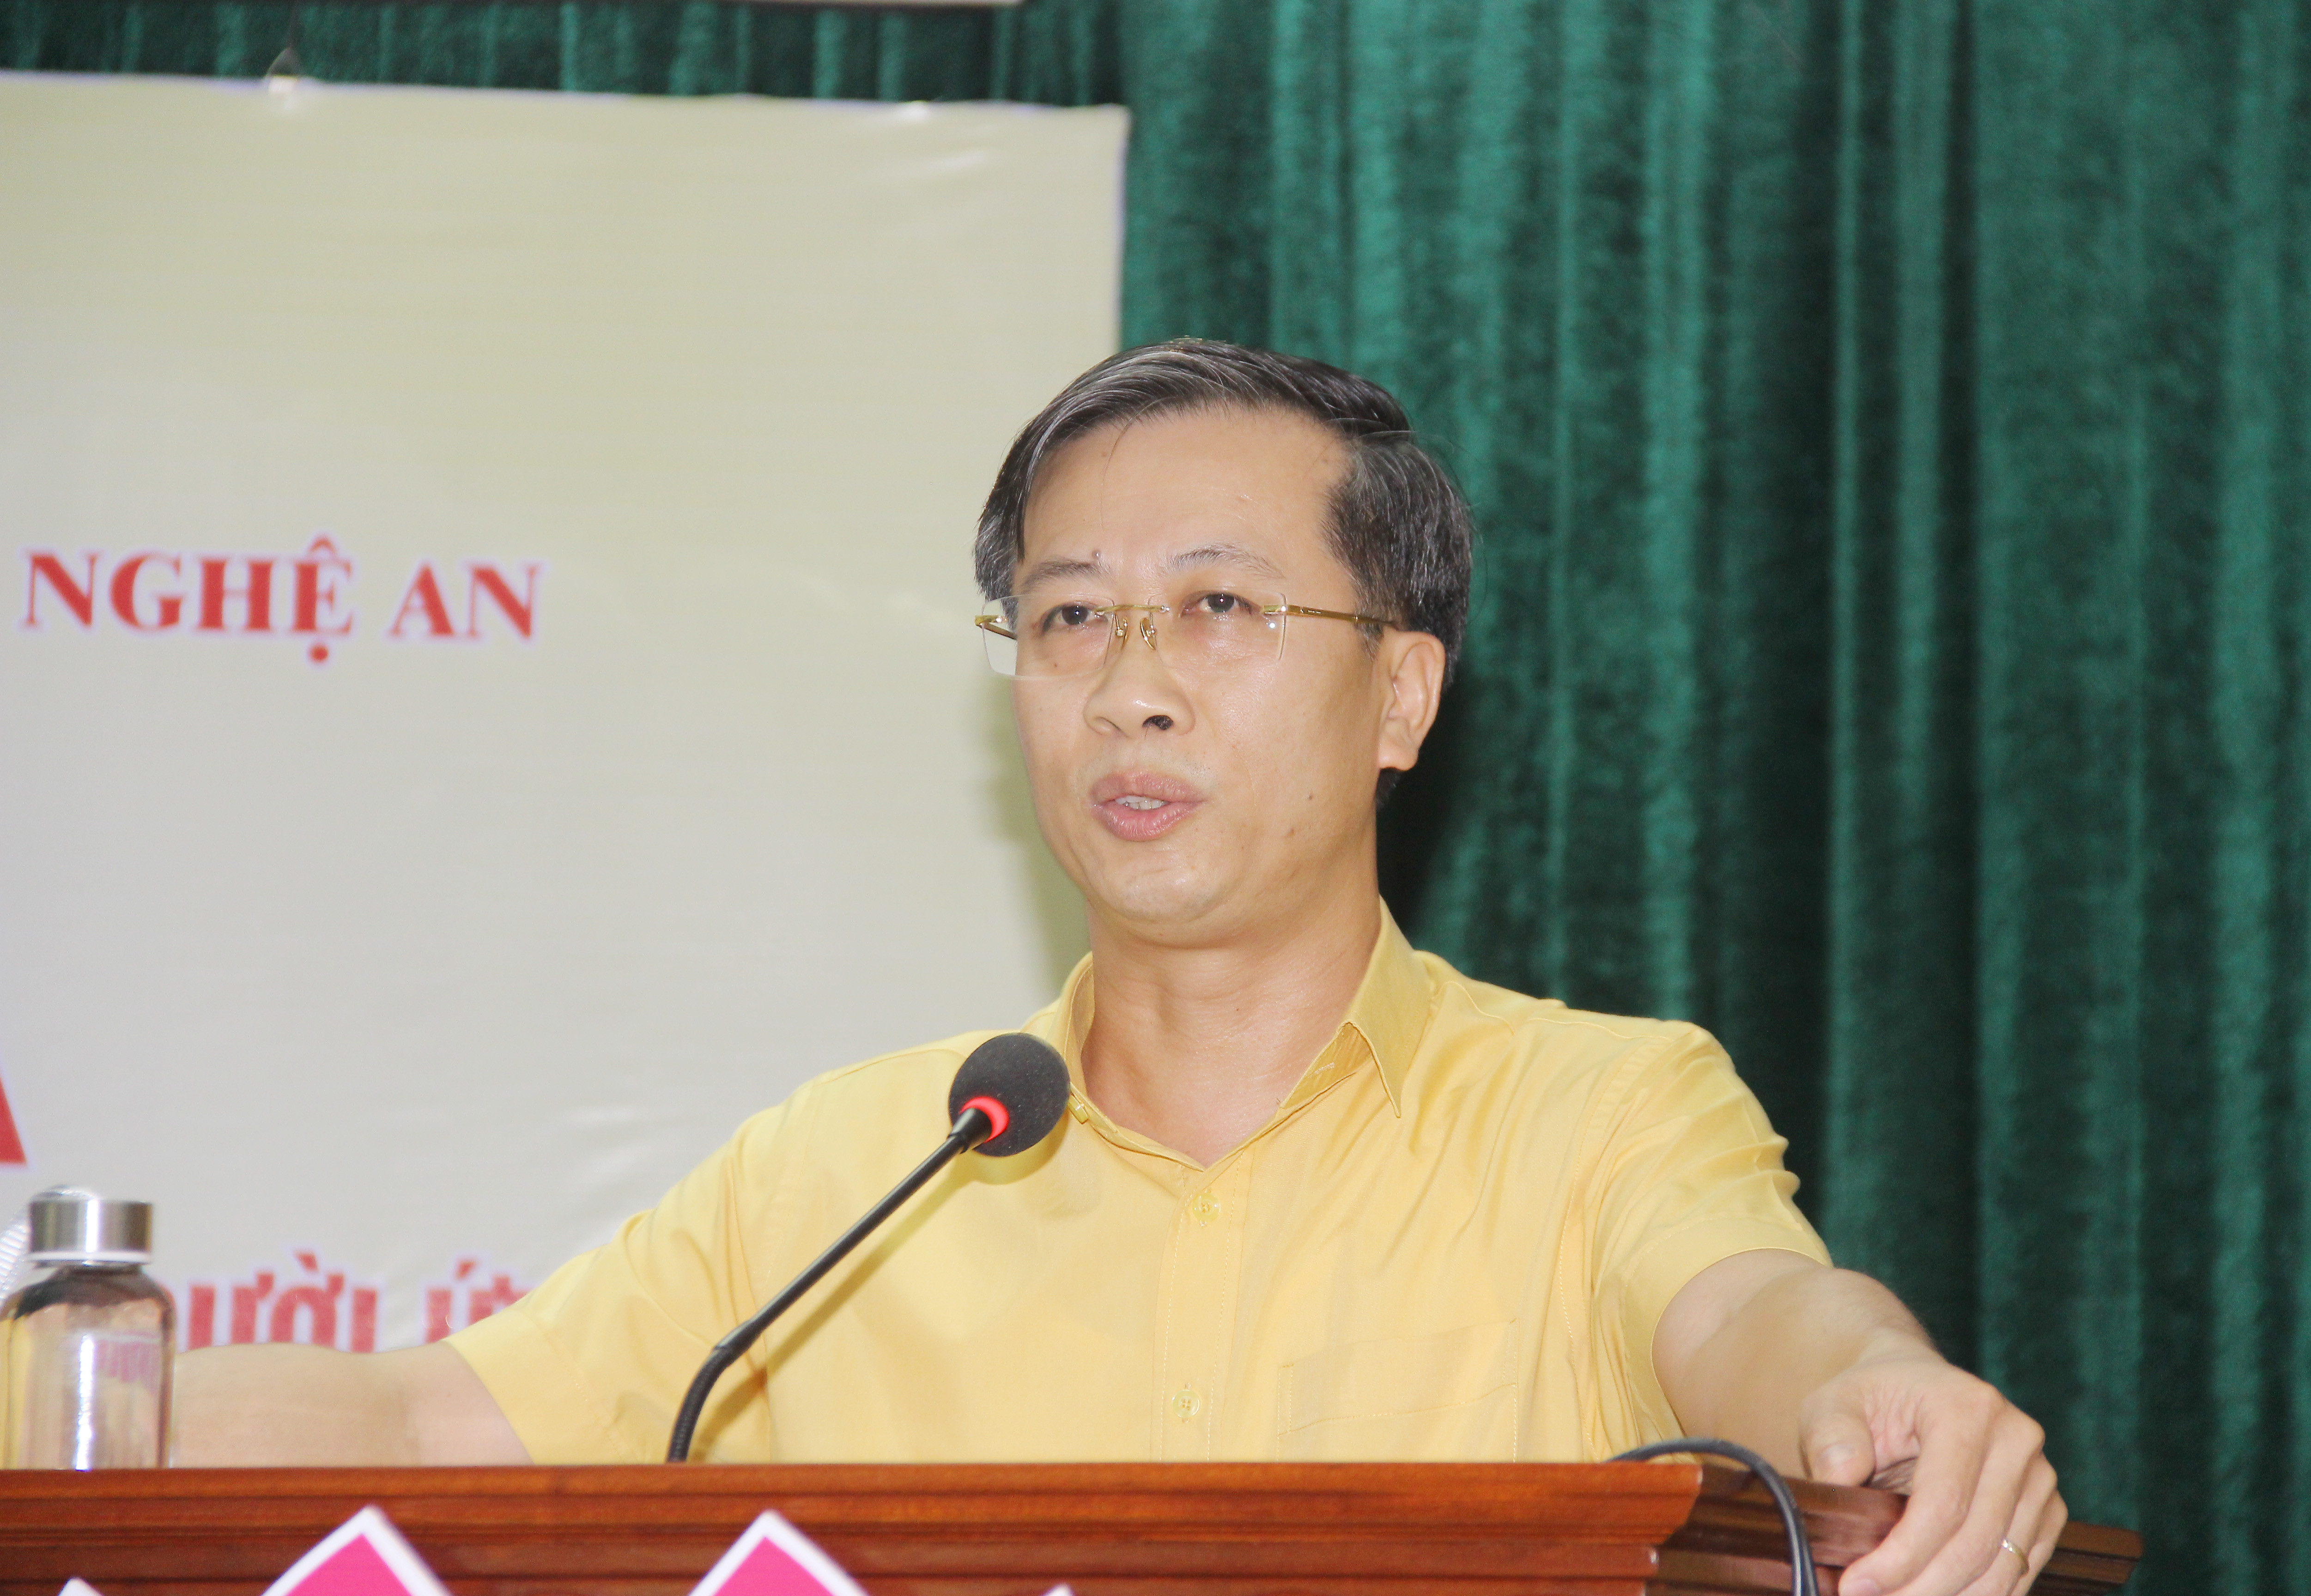 Ông Nguyễn Đức Thành - Phó Chủ tịch Ủy ban MTTQ Việt Nam tỉnh báo cáo kết quả lấy ý kiến nhận xét, tín nhiệm cử tri nơi cư trú đối với những người giới thiệu ứng cử đại biểu Quốc hội khóa XV. Ảnh: Mai Hoa